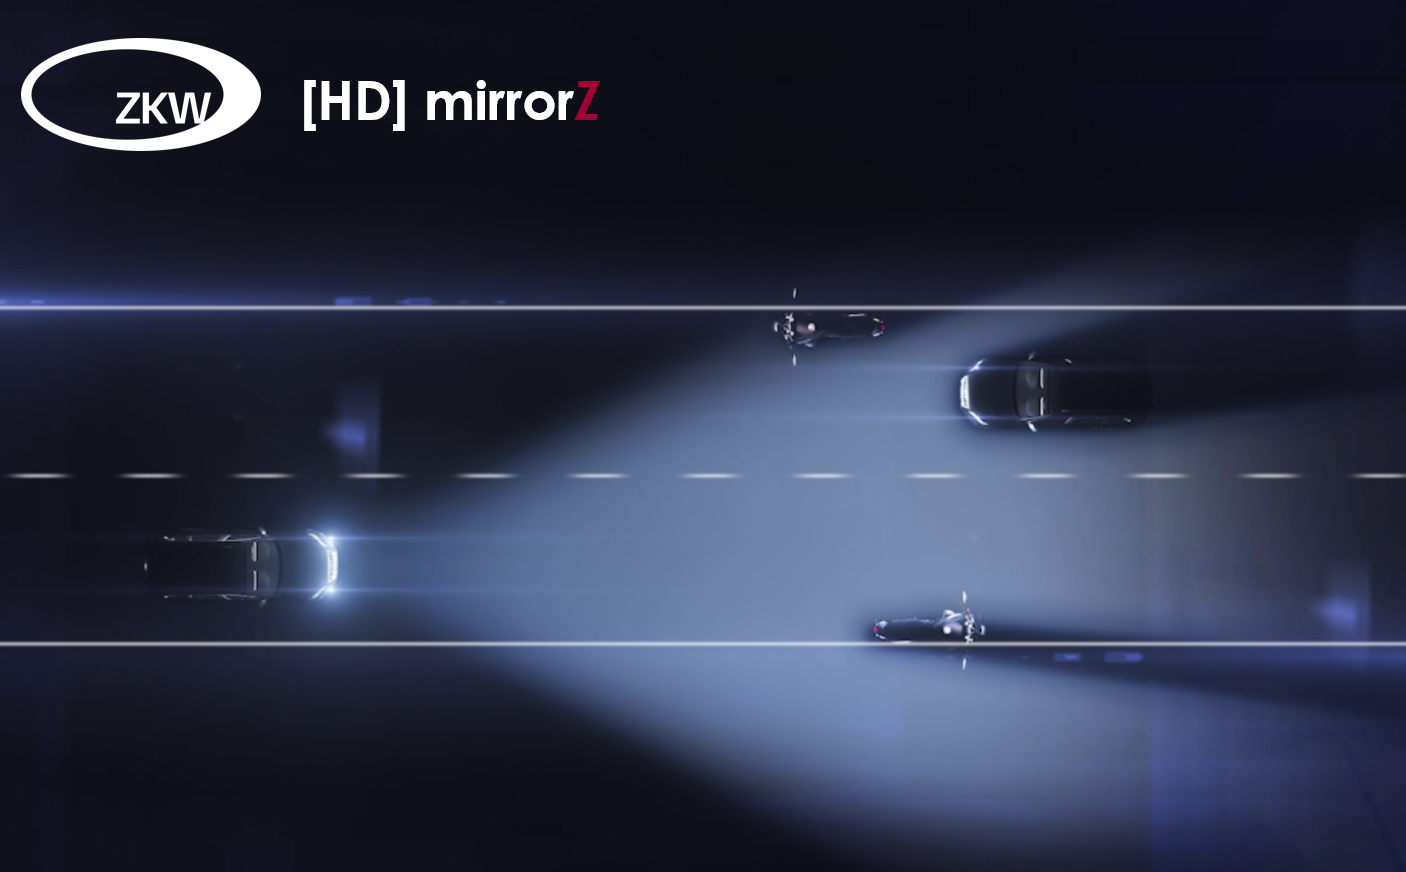 [HD] mirrorZ